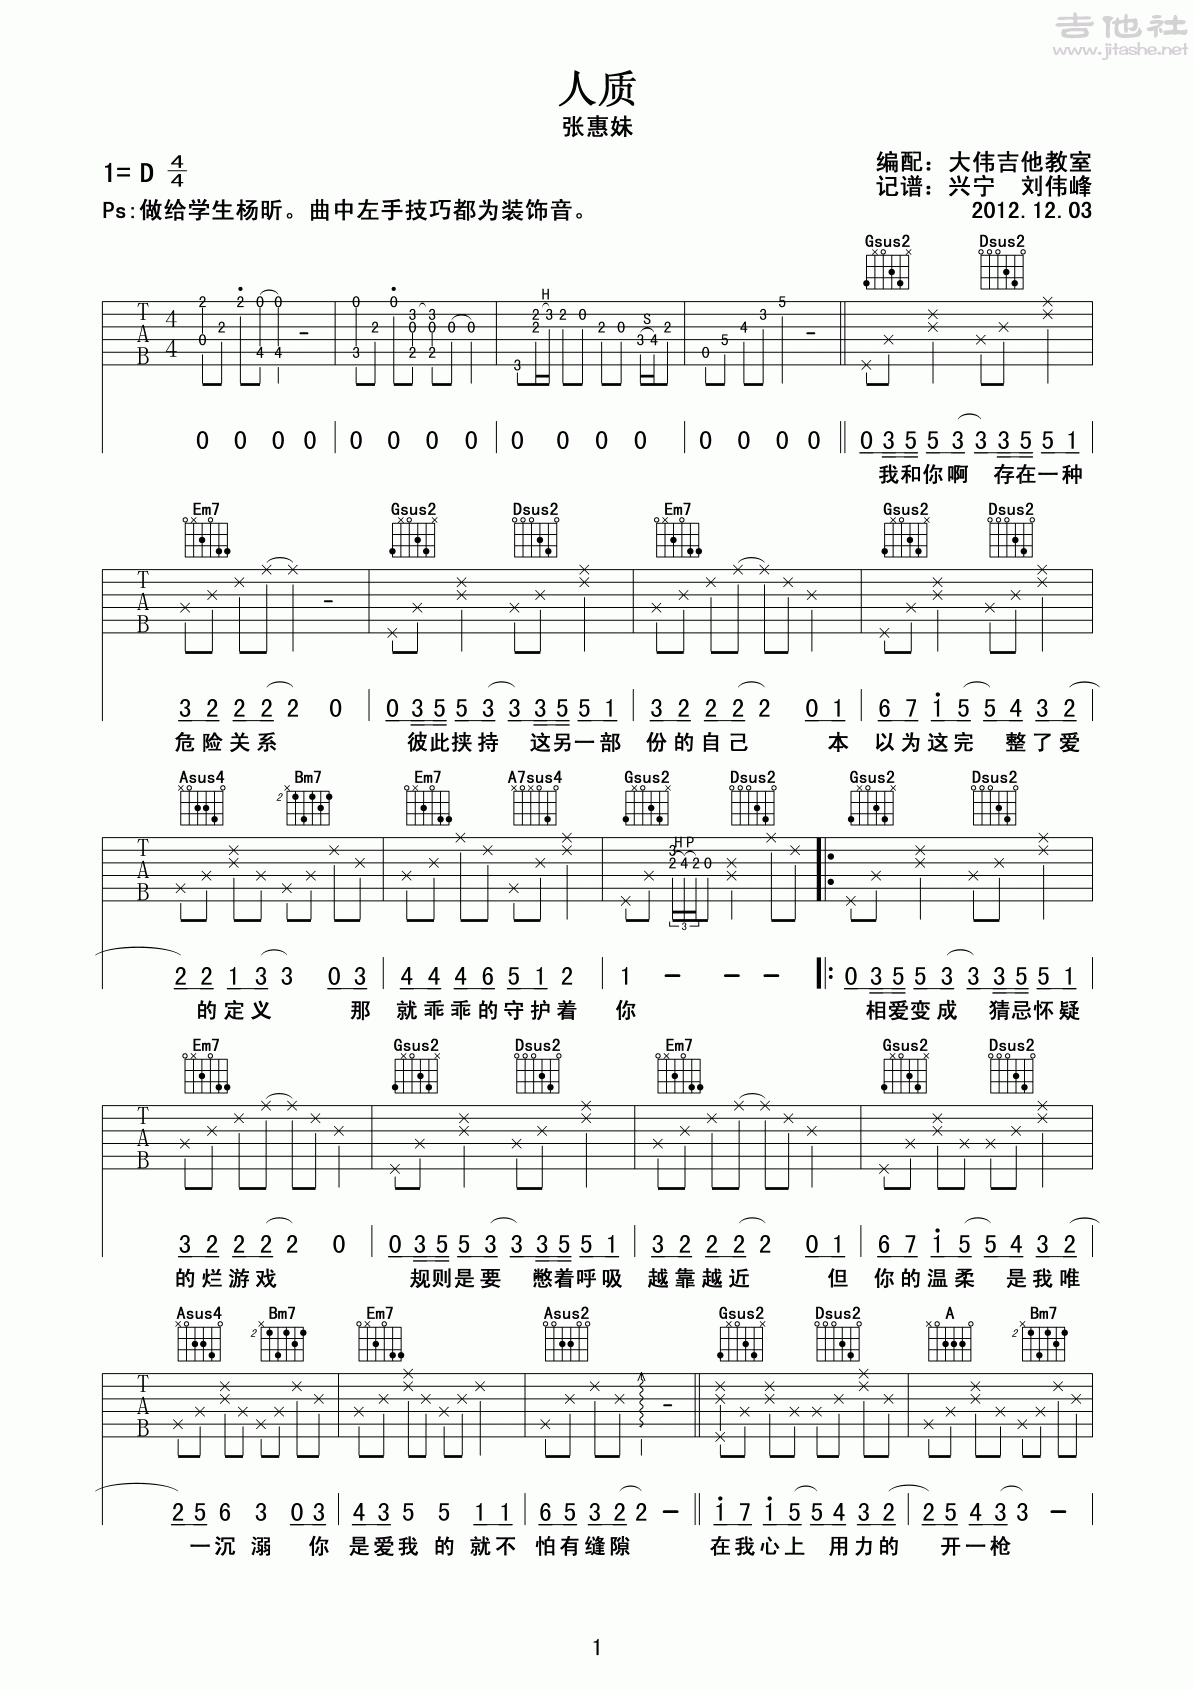 周杰伦 - 晴天(单吉他版) [弹唱 大伟吉他] 吉他谱